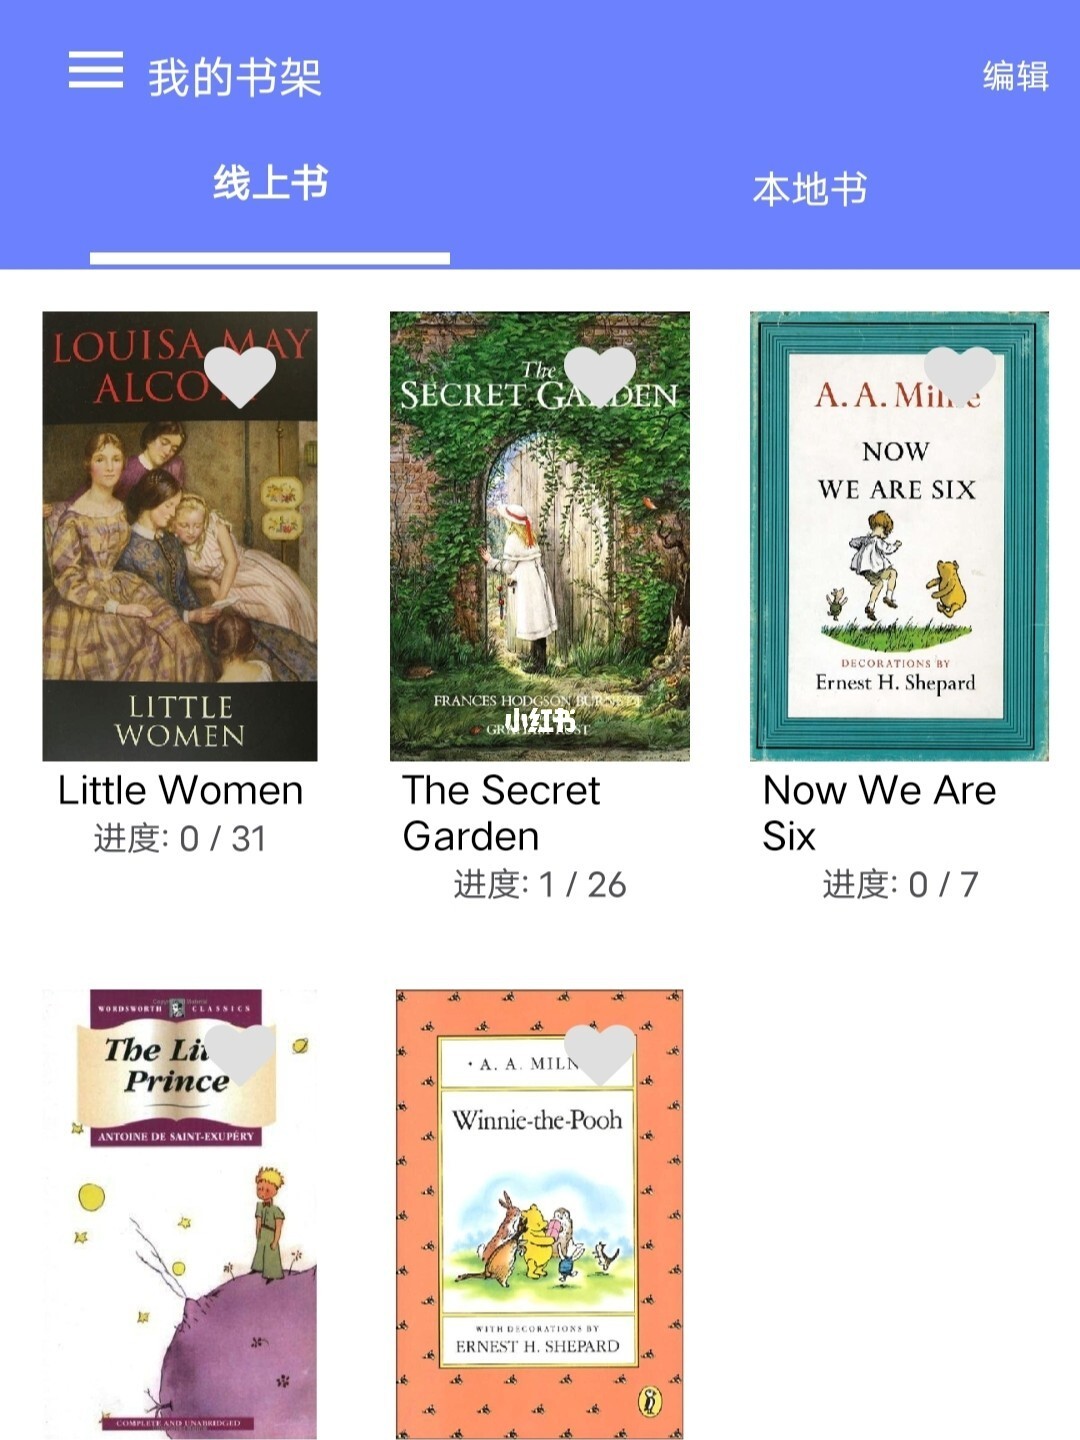 免费的英文书籍app的简单介绍